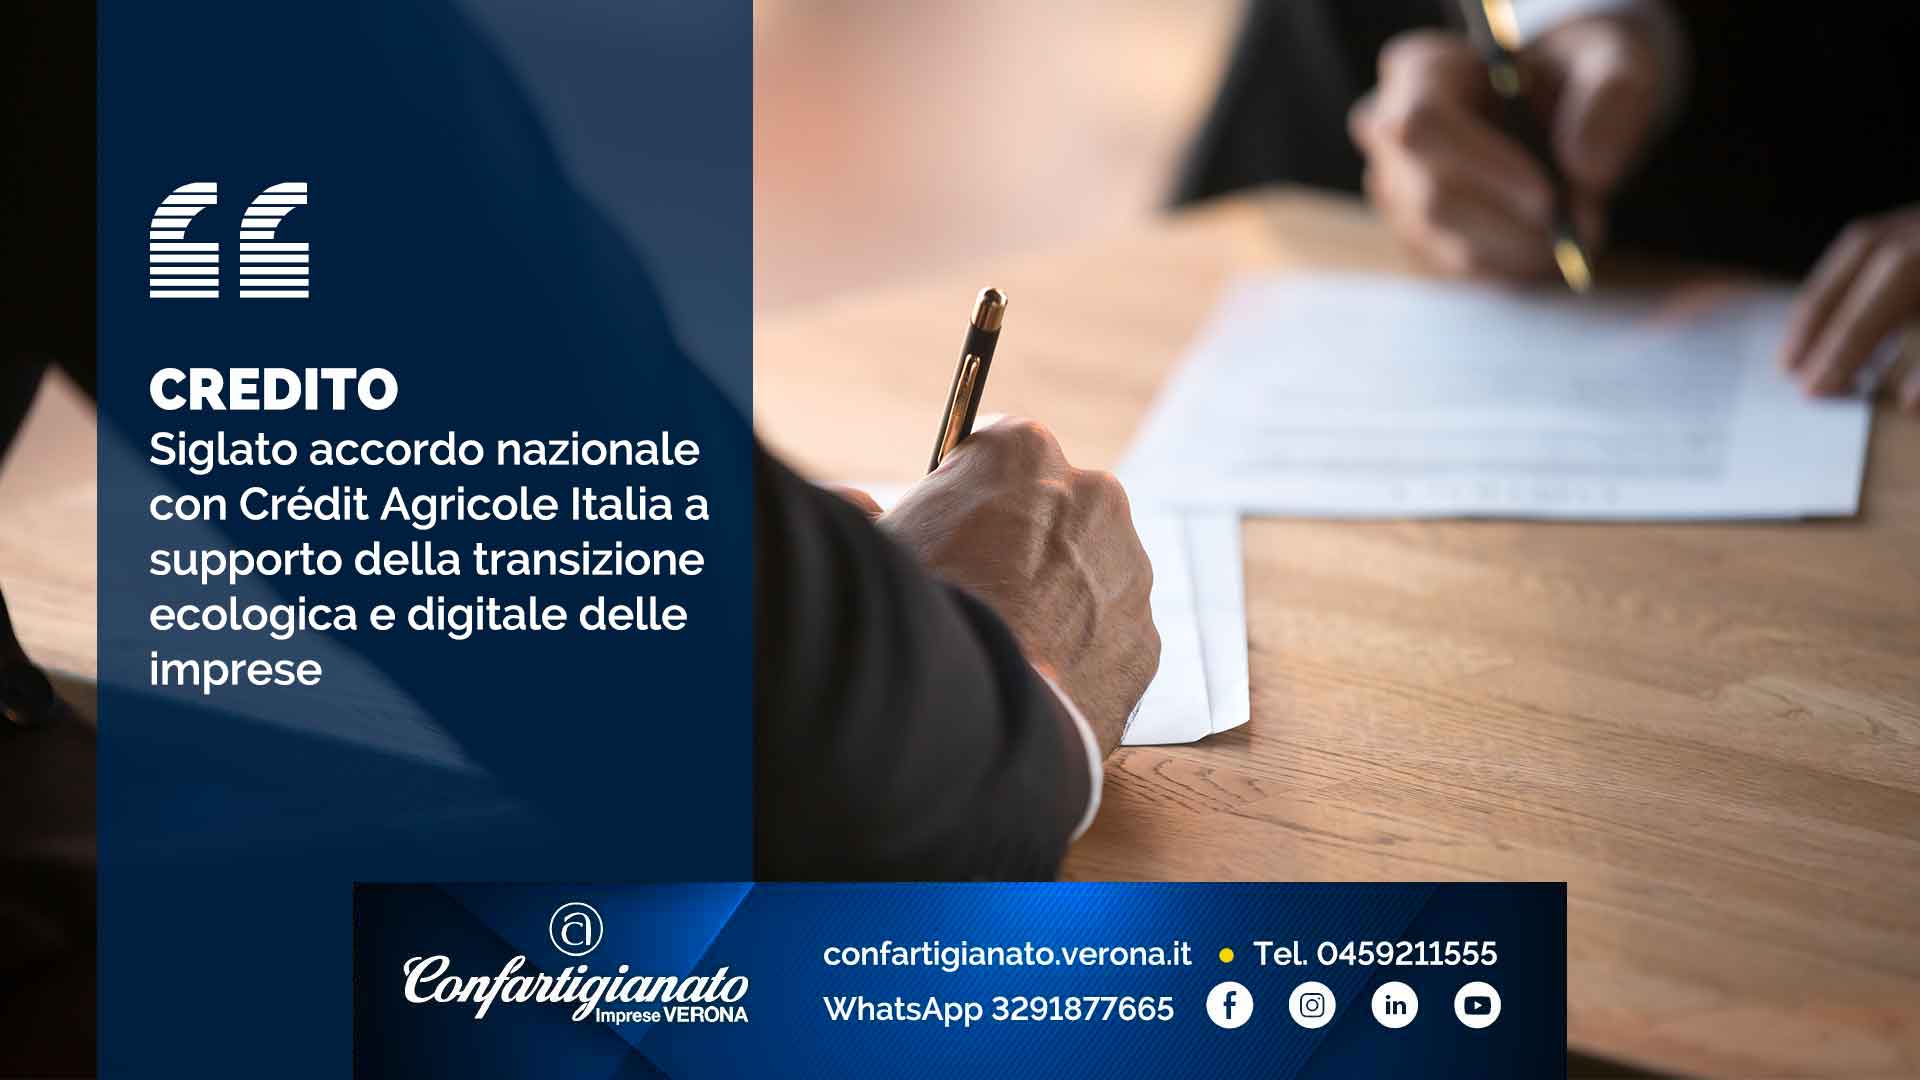 CREDITO – Siglato accordo nazionale con Crédit Agricole Italia a supporto della transizione ecologica e digitale delle imprese